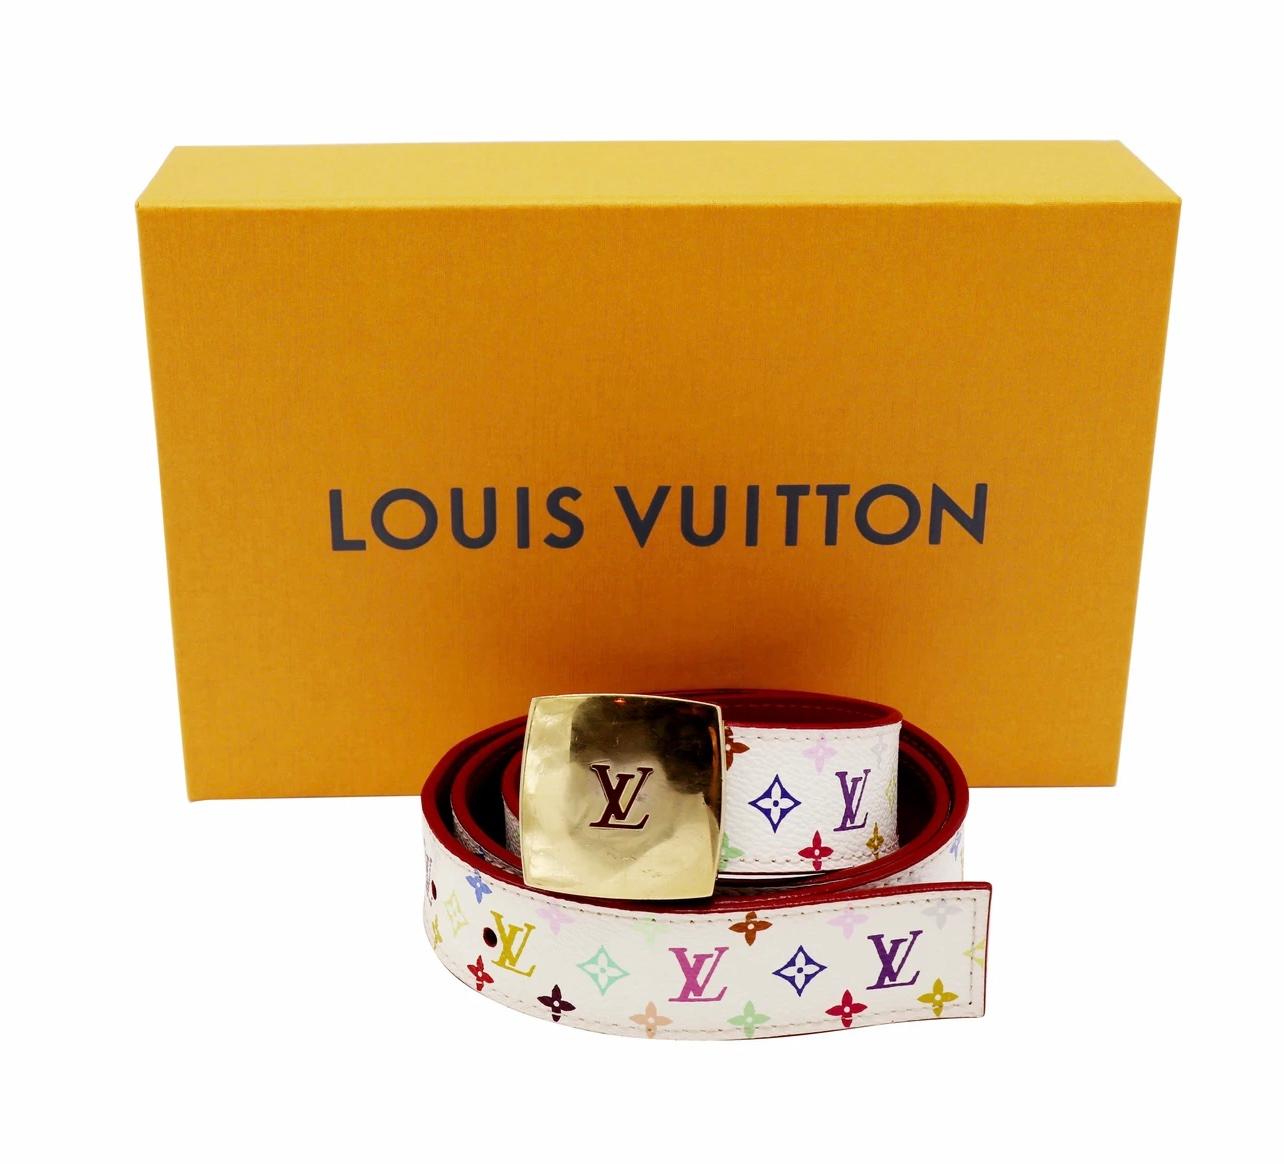 Cette ceinture Louis Vuitton est issue de la collection 2003 et est fabriquée en toile enduite. La ceinture comporte une toile enduite blanche avec un monogramme multicolore, une boucle Tony dorée et une garniture et un dos en cuir rouge.

MATÉRIEL